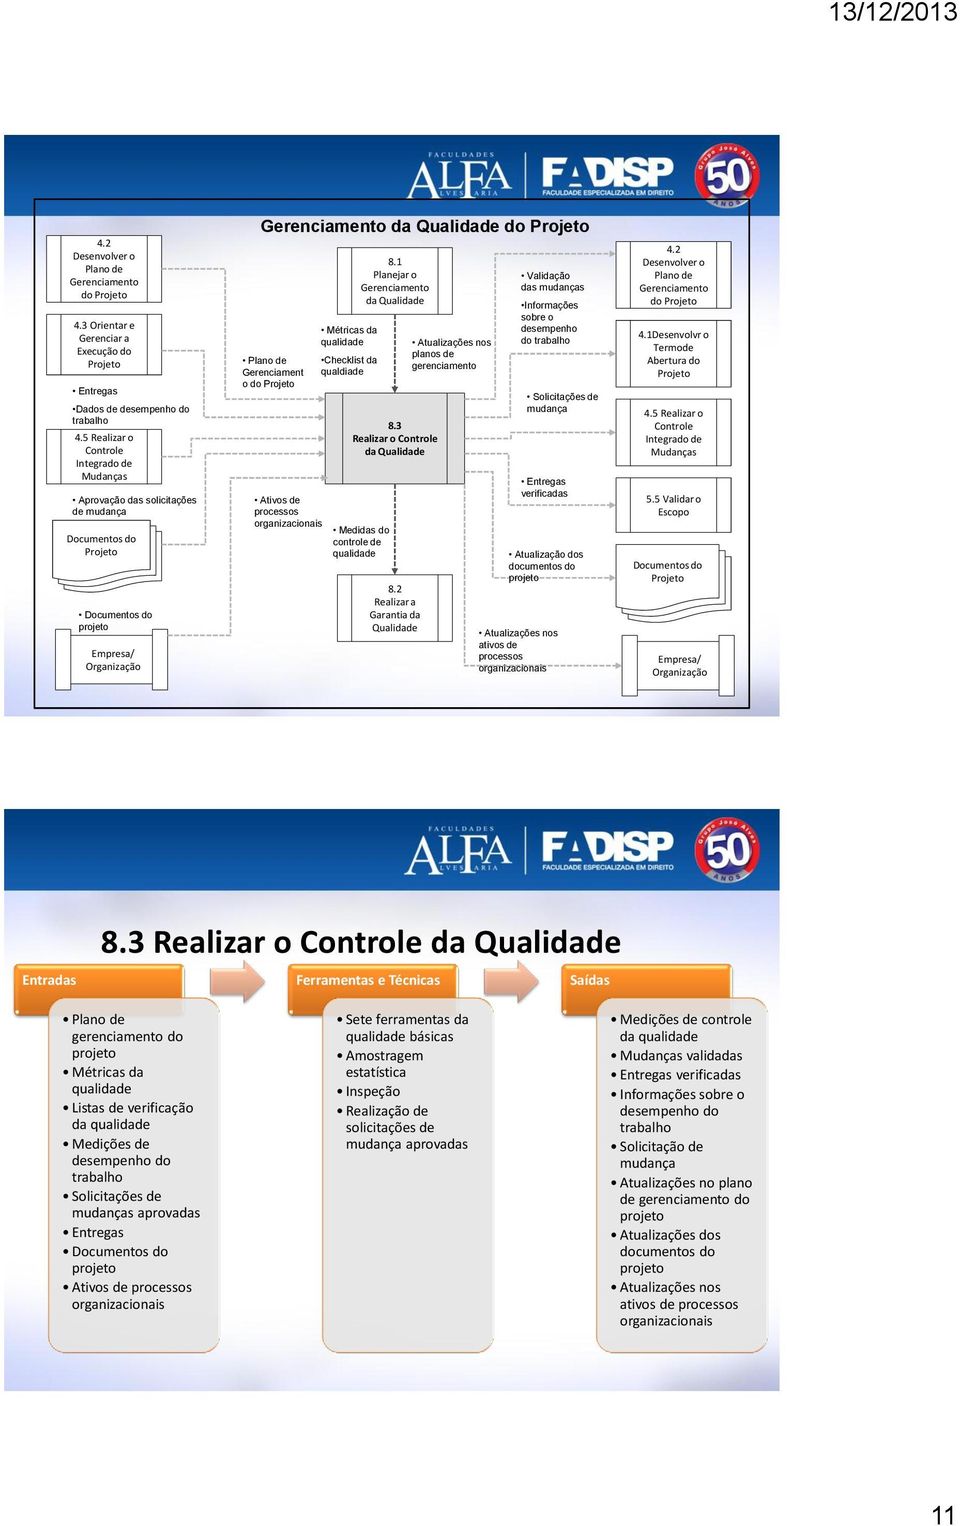 Gerenciament o do Projeto Ativos de processos organizacionais Métricas da qualidade Checklist da qualdiade 8.1 Planejar o Gerenciamento da Qualidade 8.